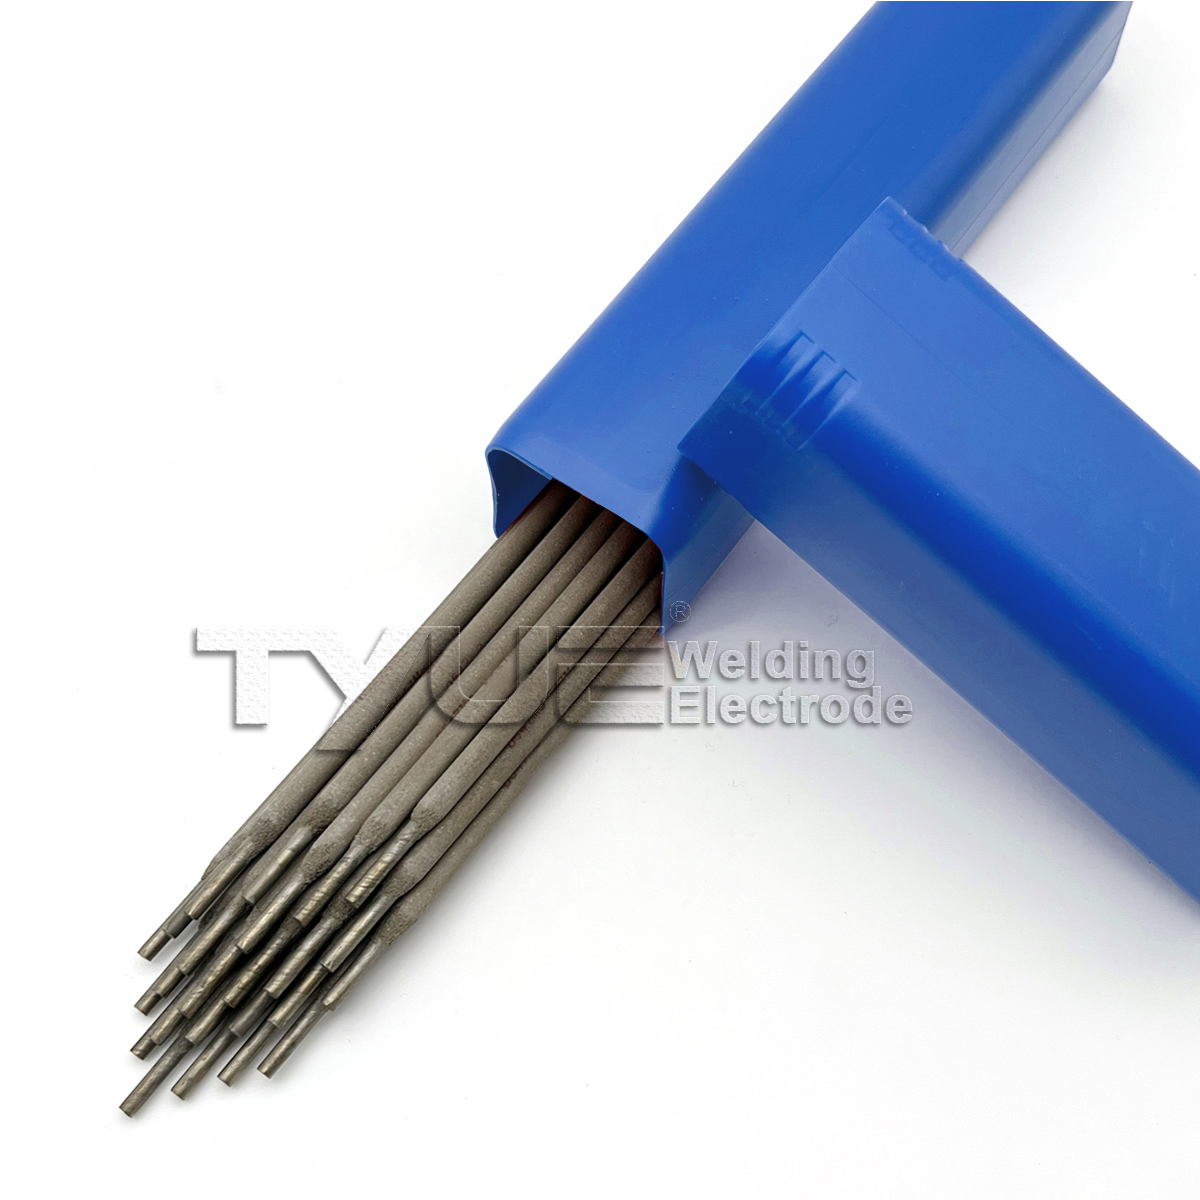 Elektrody spawalnicze do napawania DIN 8555 (E1-UM-350) Pręty spawalnicze do napawania, elektroda prętowa odporna na zużycie